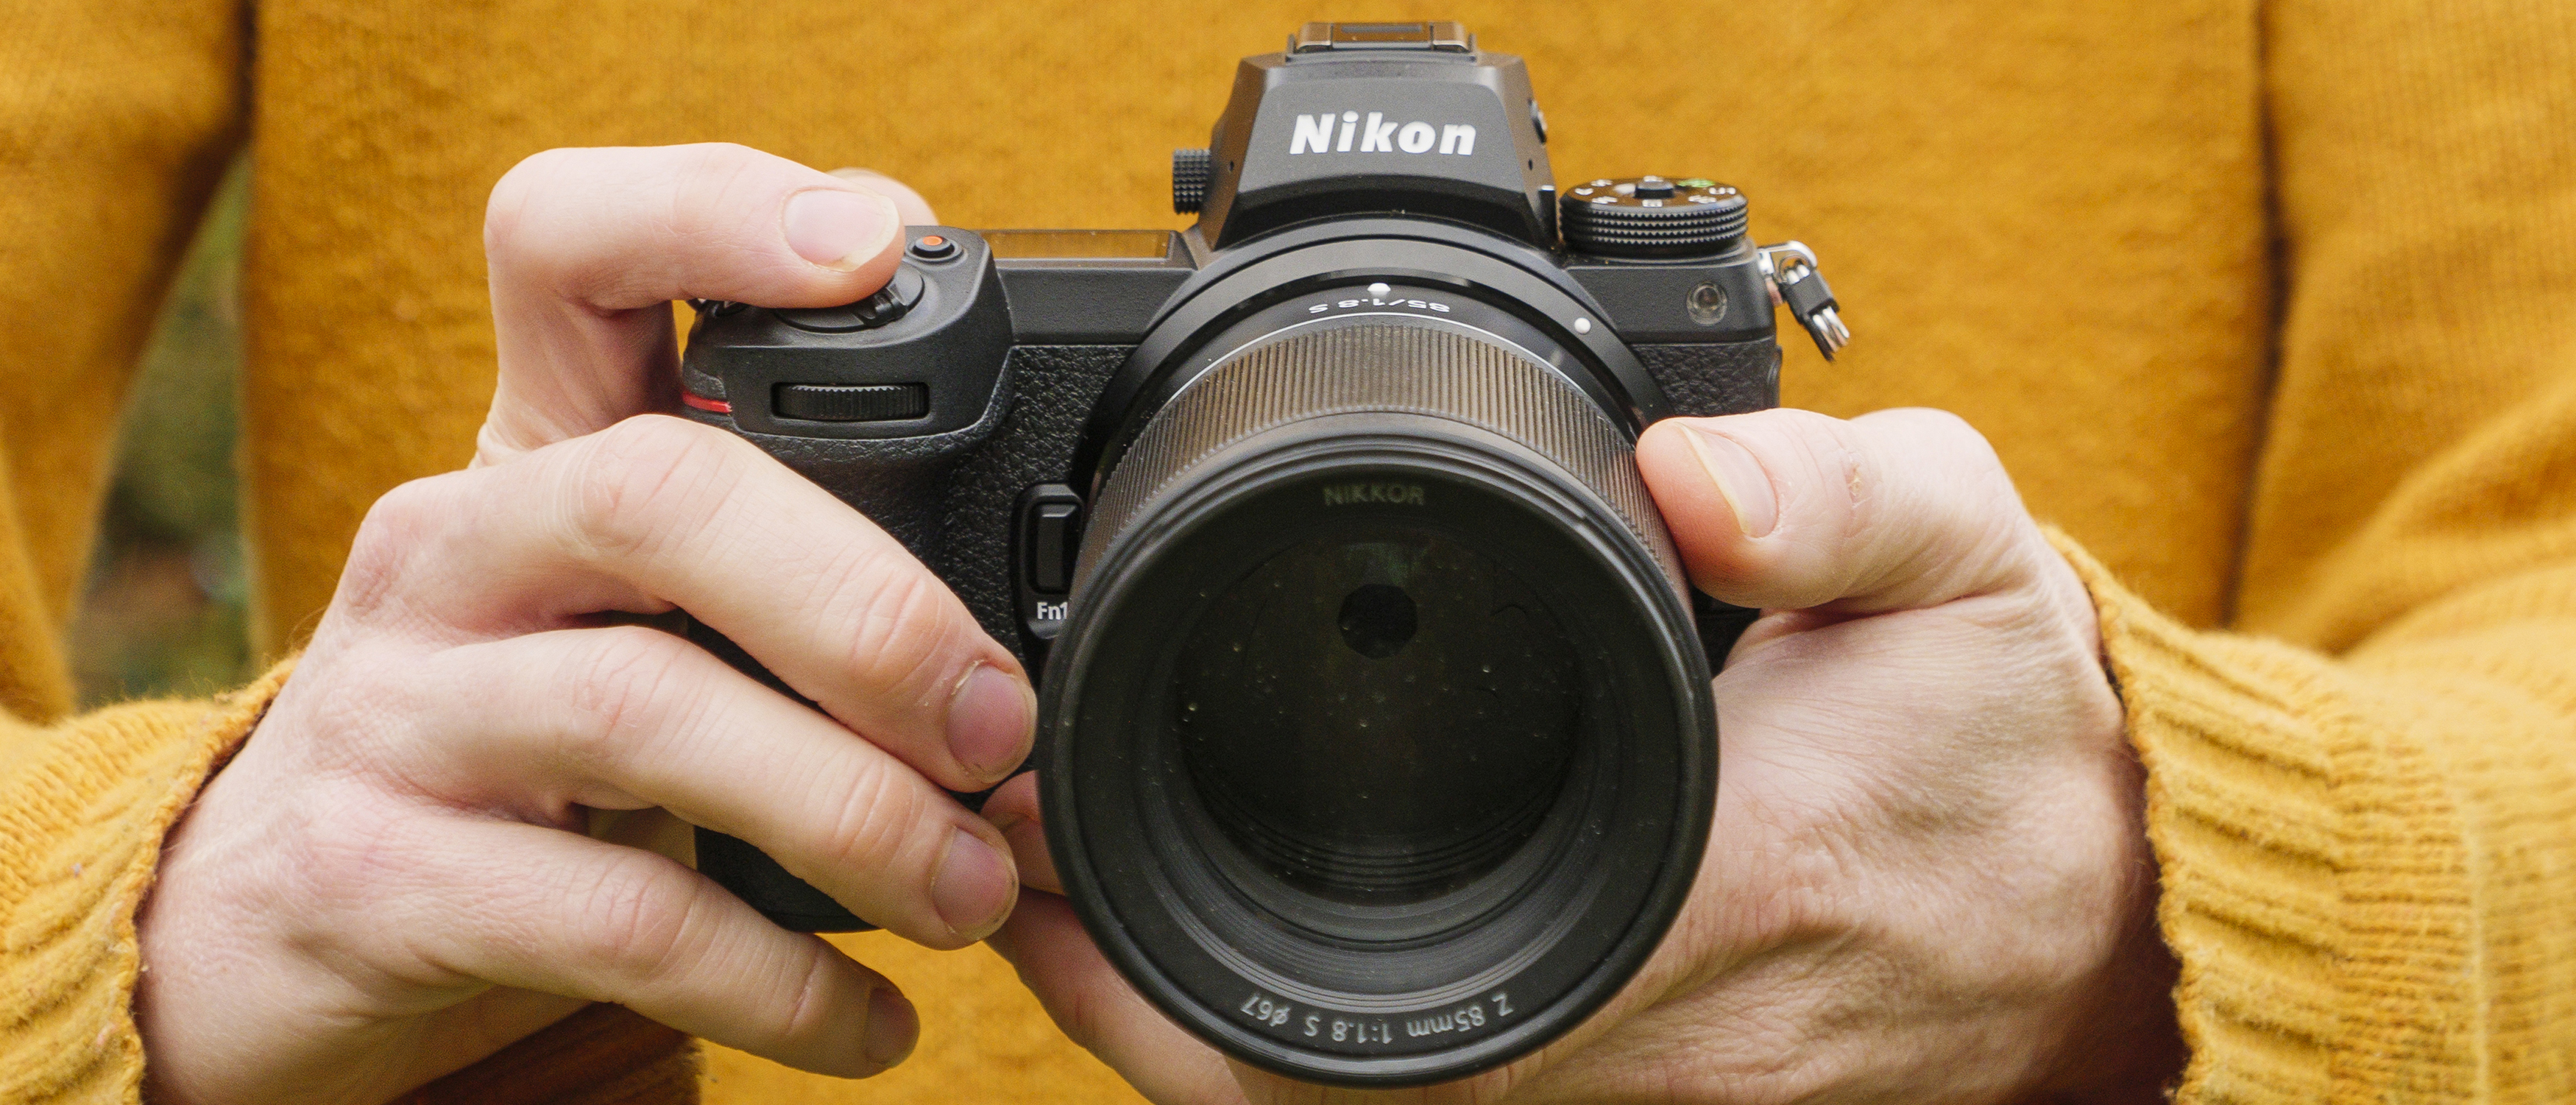 Nikon Z 7 II Review